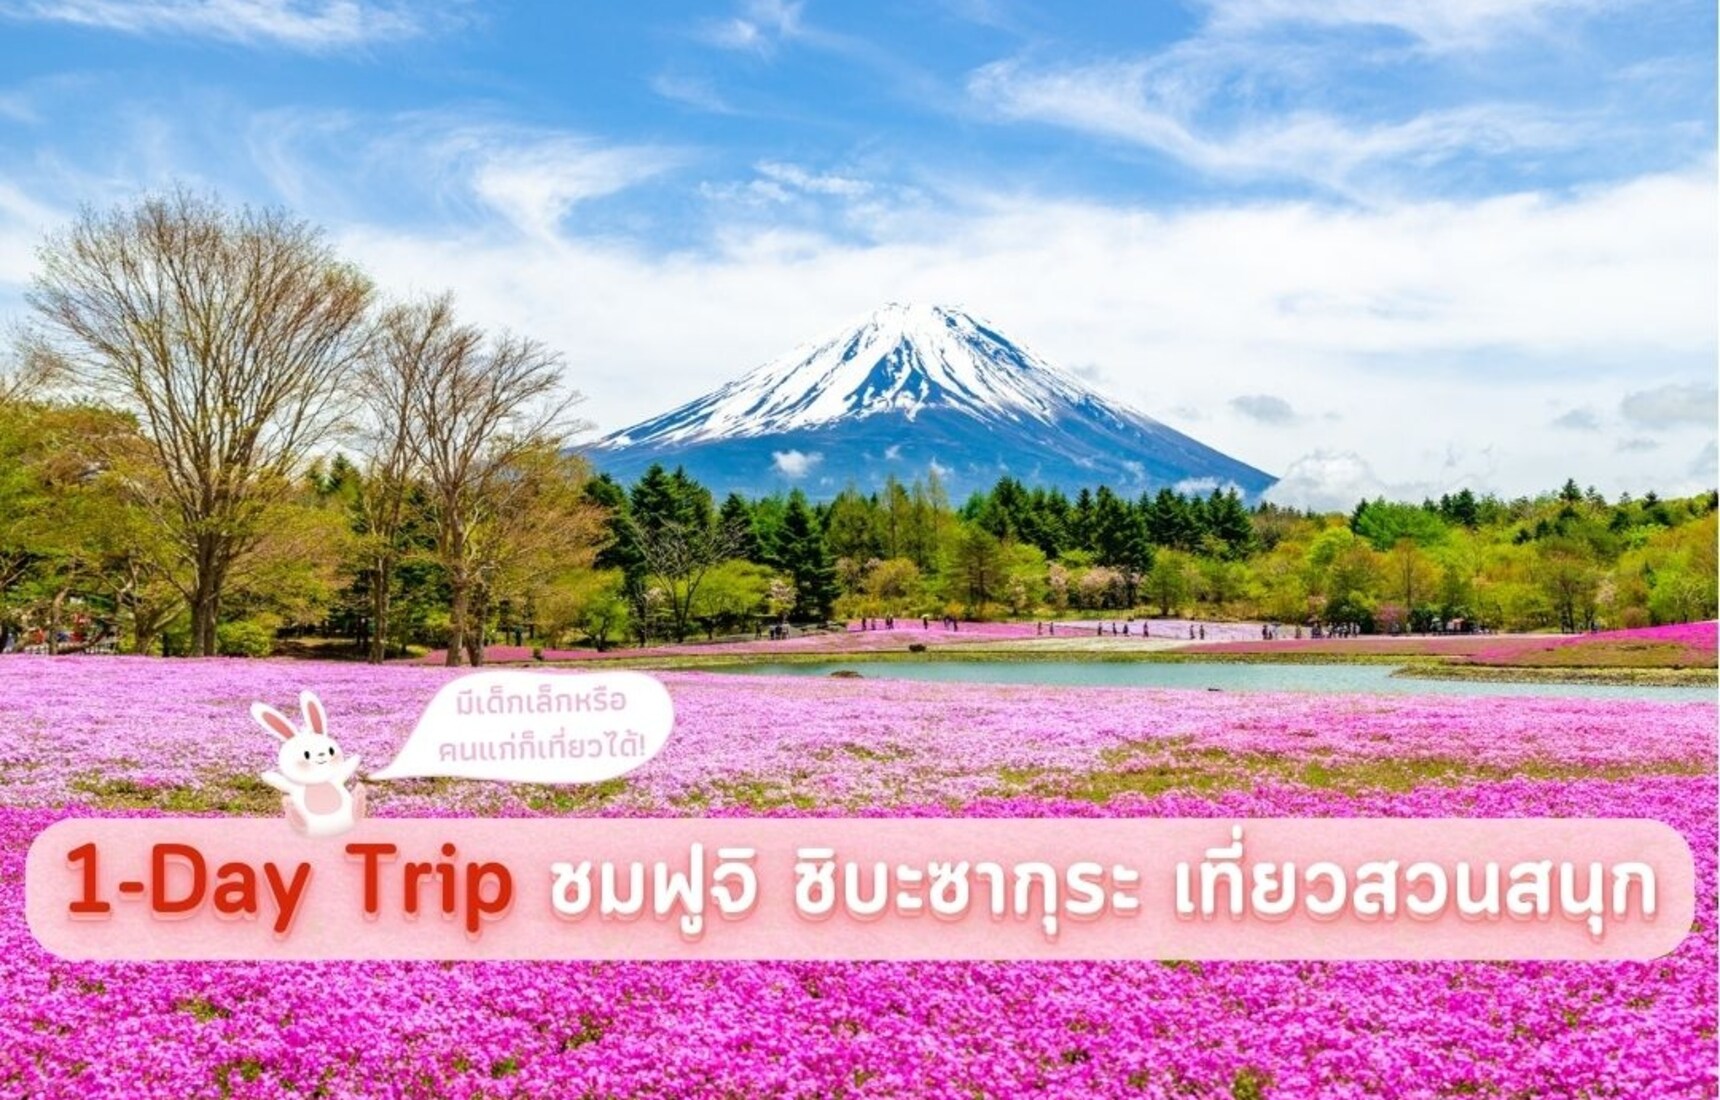 ตัวอย่าง 1-Day Trip ชมภูเขาไฟฟูจิ ทุ่งดอกชิบะซากุระ และสวนสนุก Fuji-Q Highland